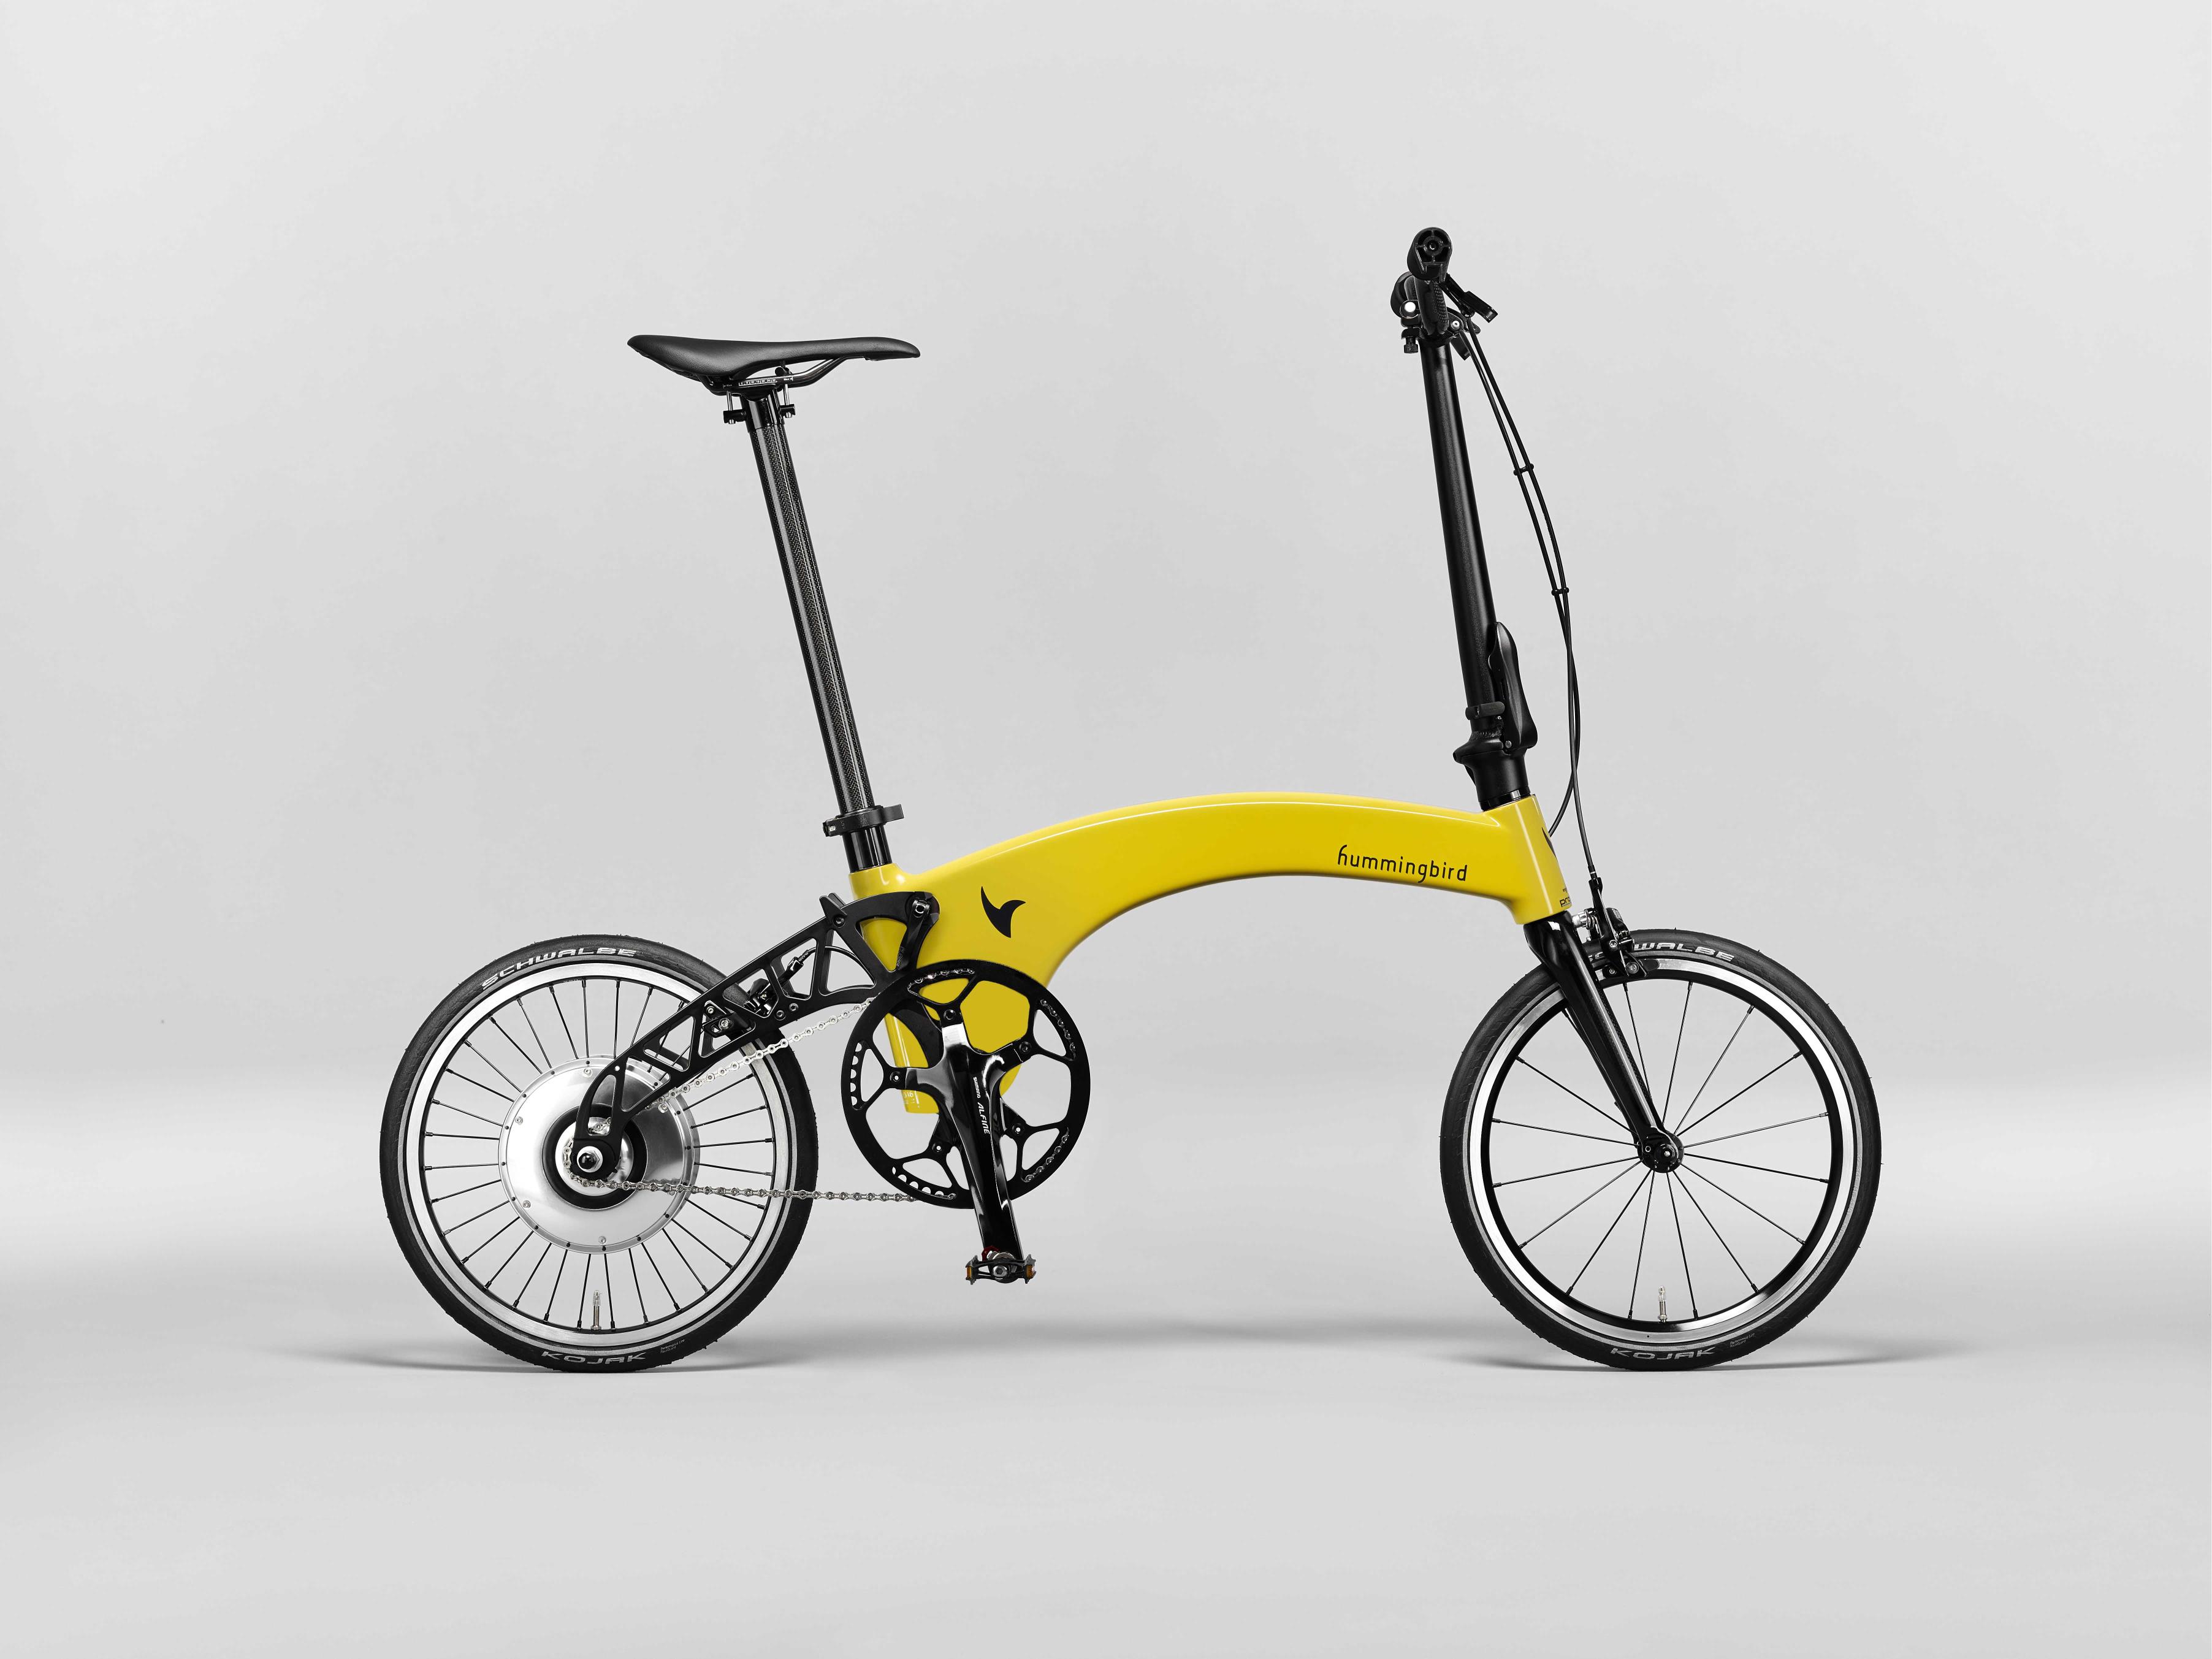 Купить легкий взрослый велосипед. Велосипед Folding Bike складной. Электровелосипед Bicycle s1. Складной велосипед Designer e-Bike 25км/ч-55км. Jango t8 - Folding Bike.